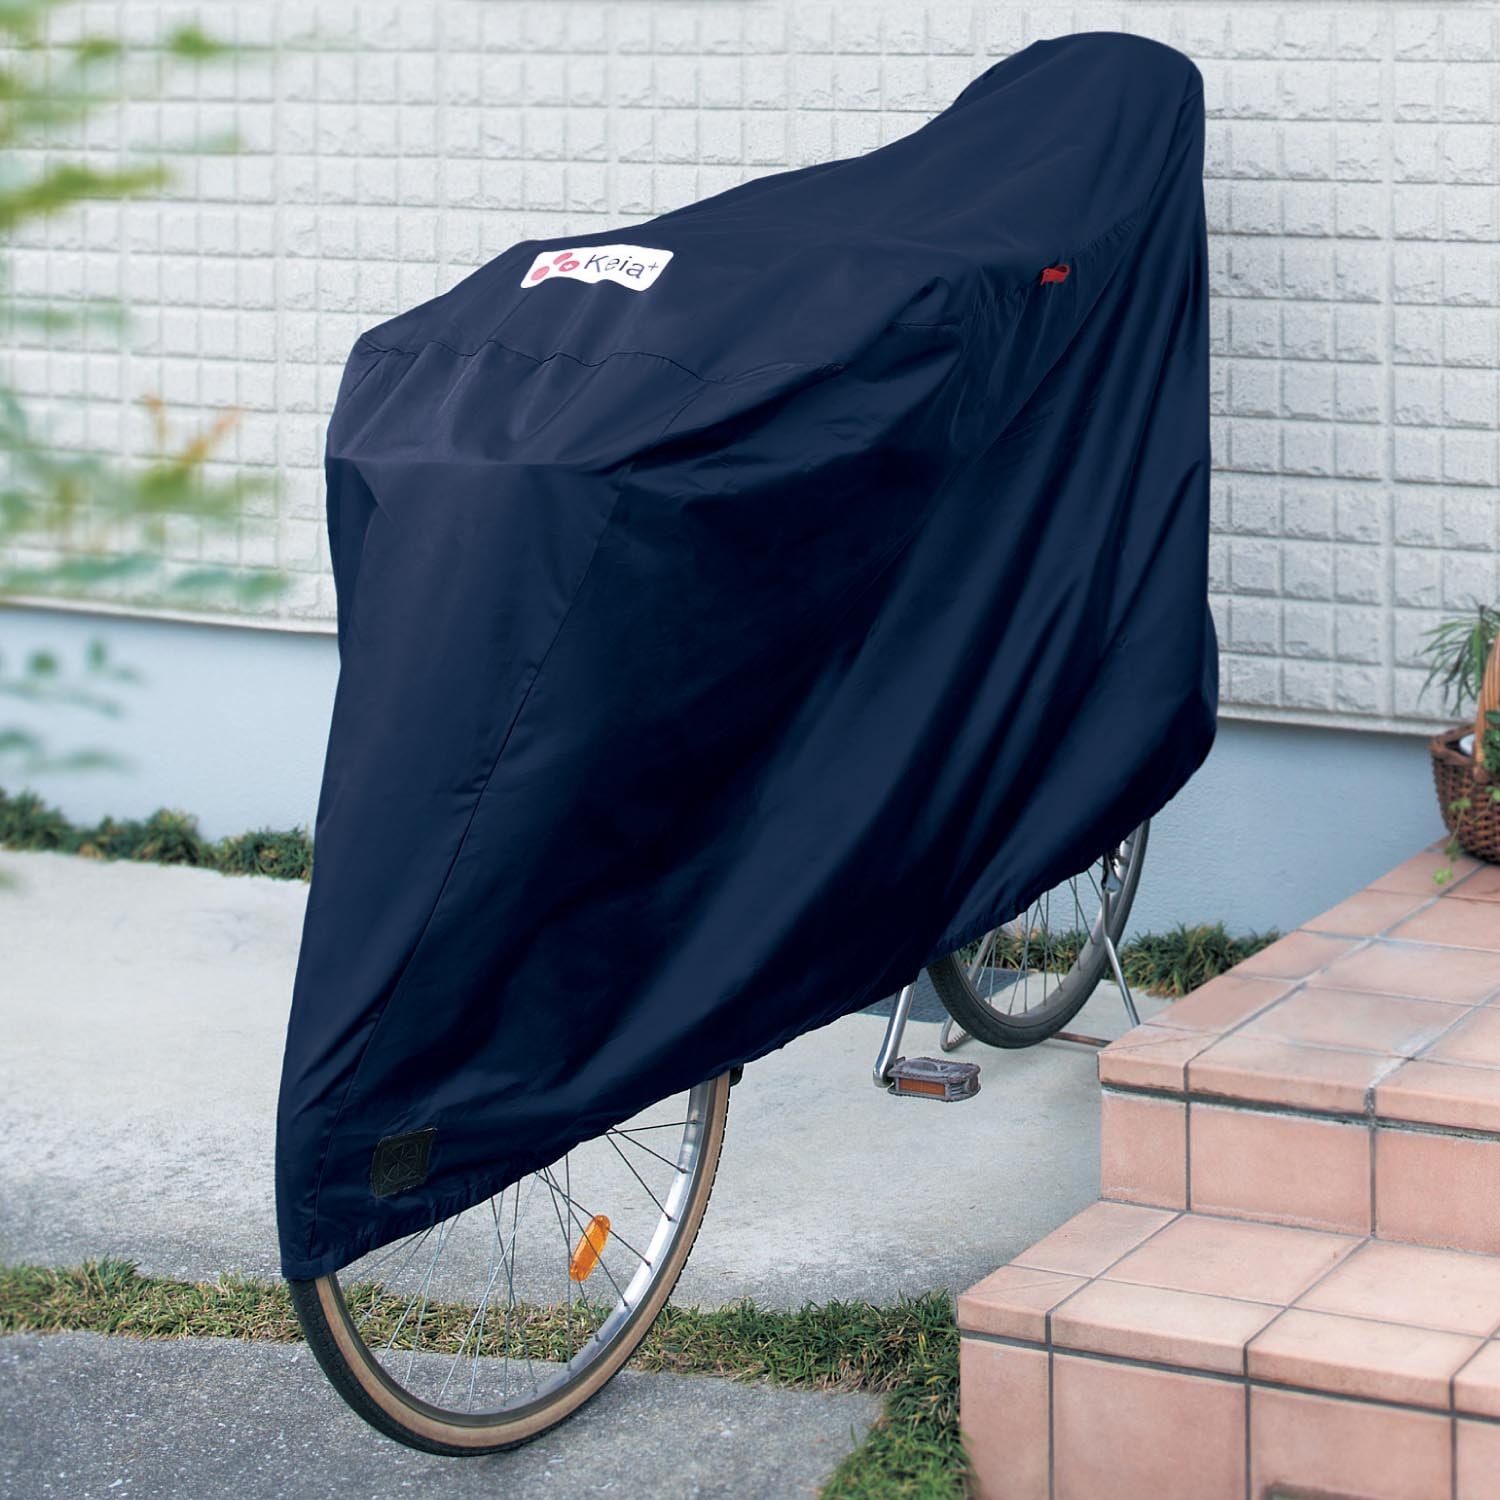 風飛び防止用ベルト付き自転車カバーの大画像